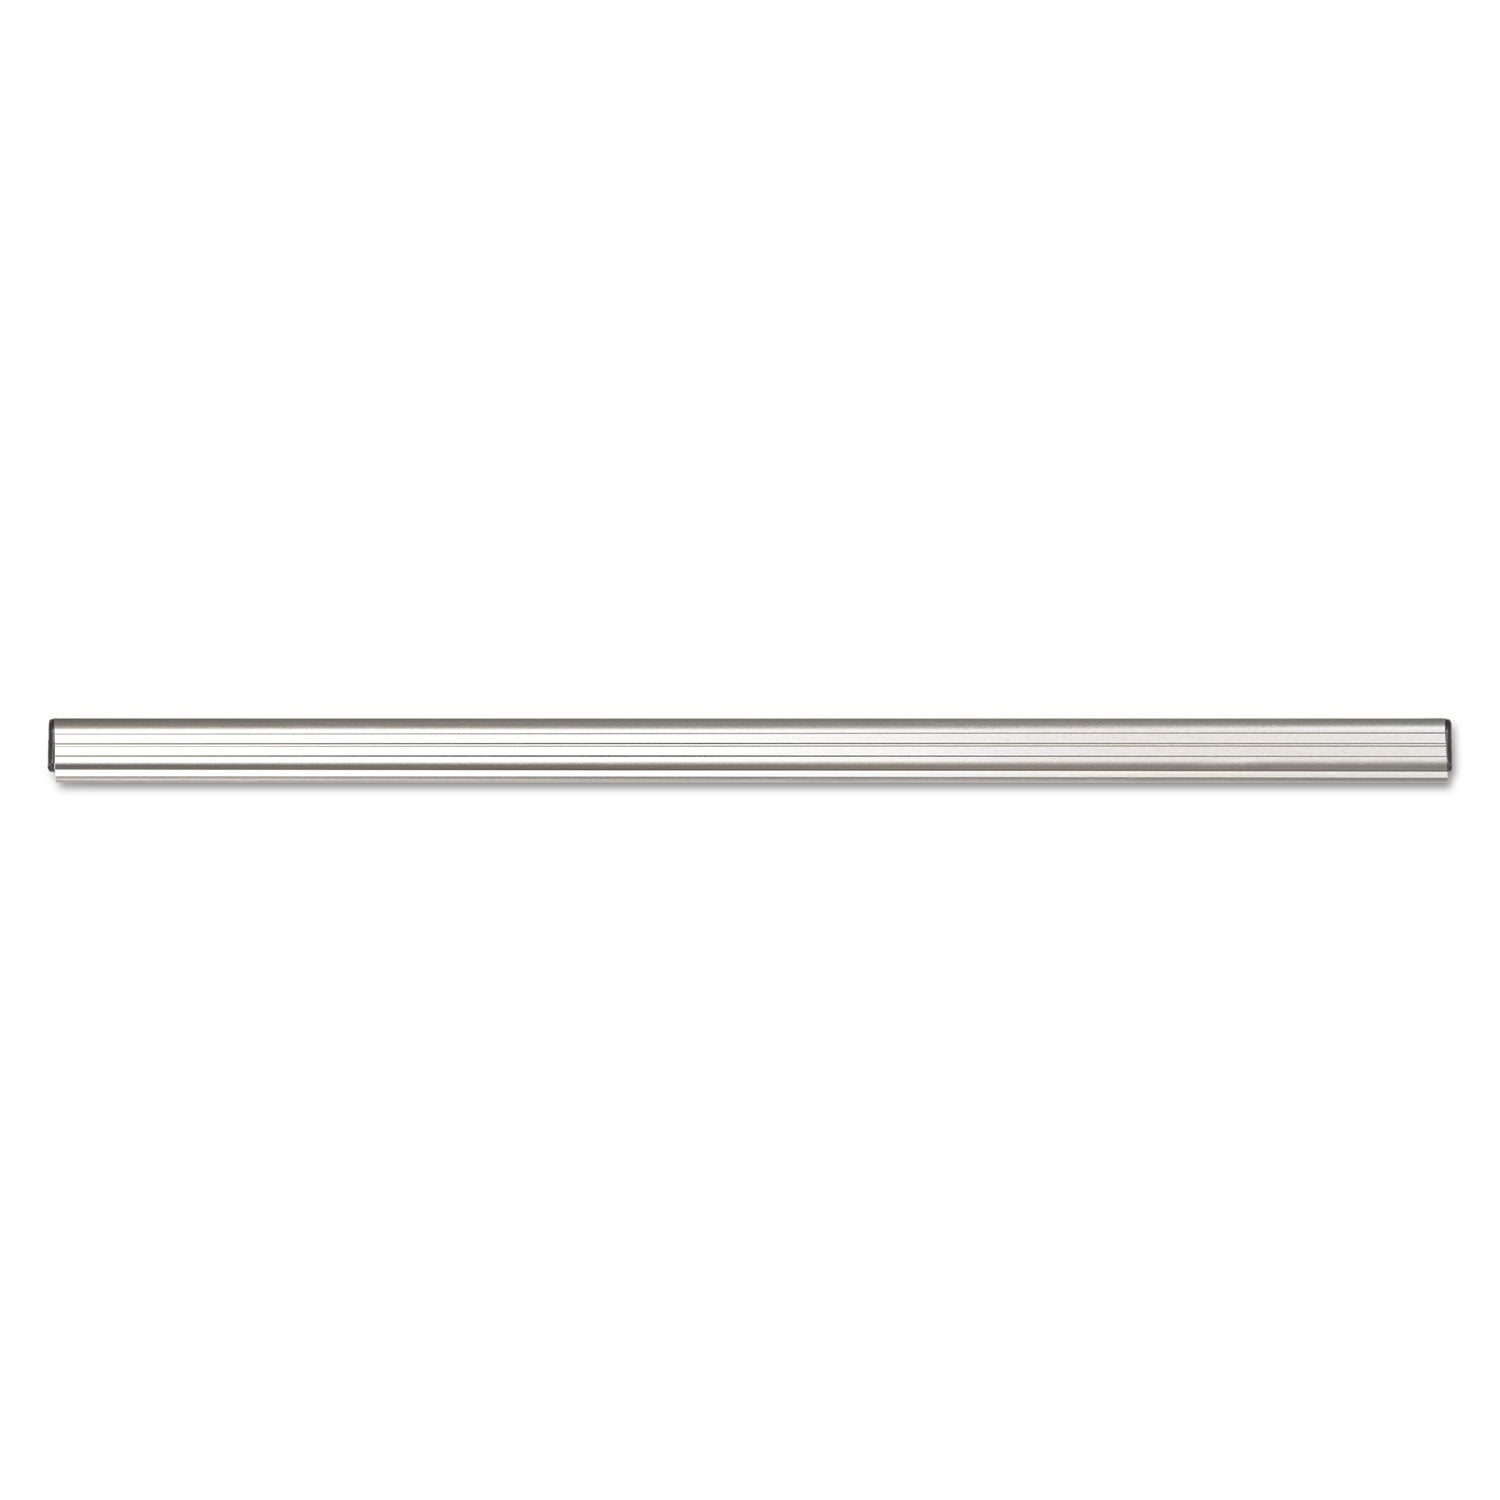 Grip-A-Strip Display Rail, 12 x 1.5, Aluminum Finish - 